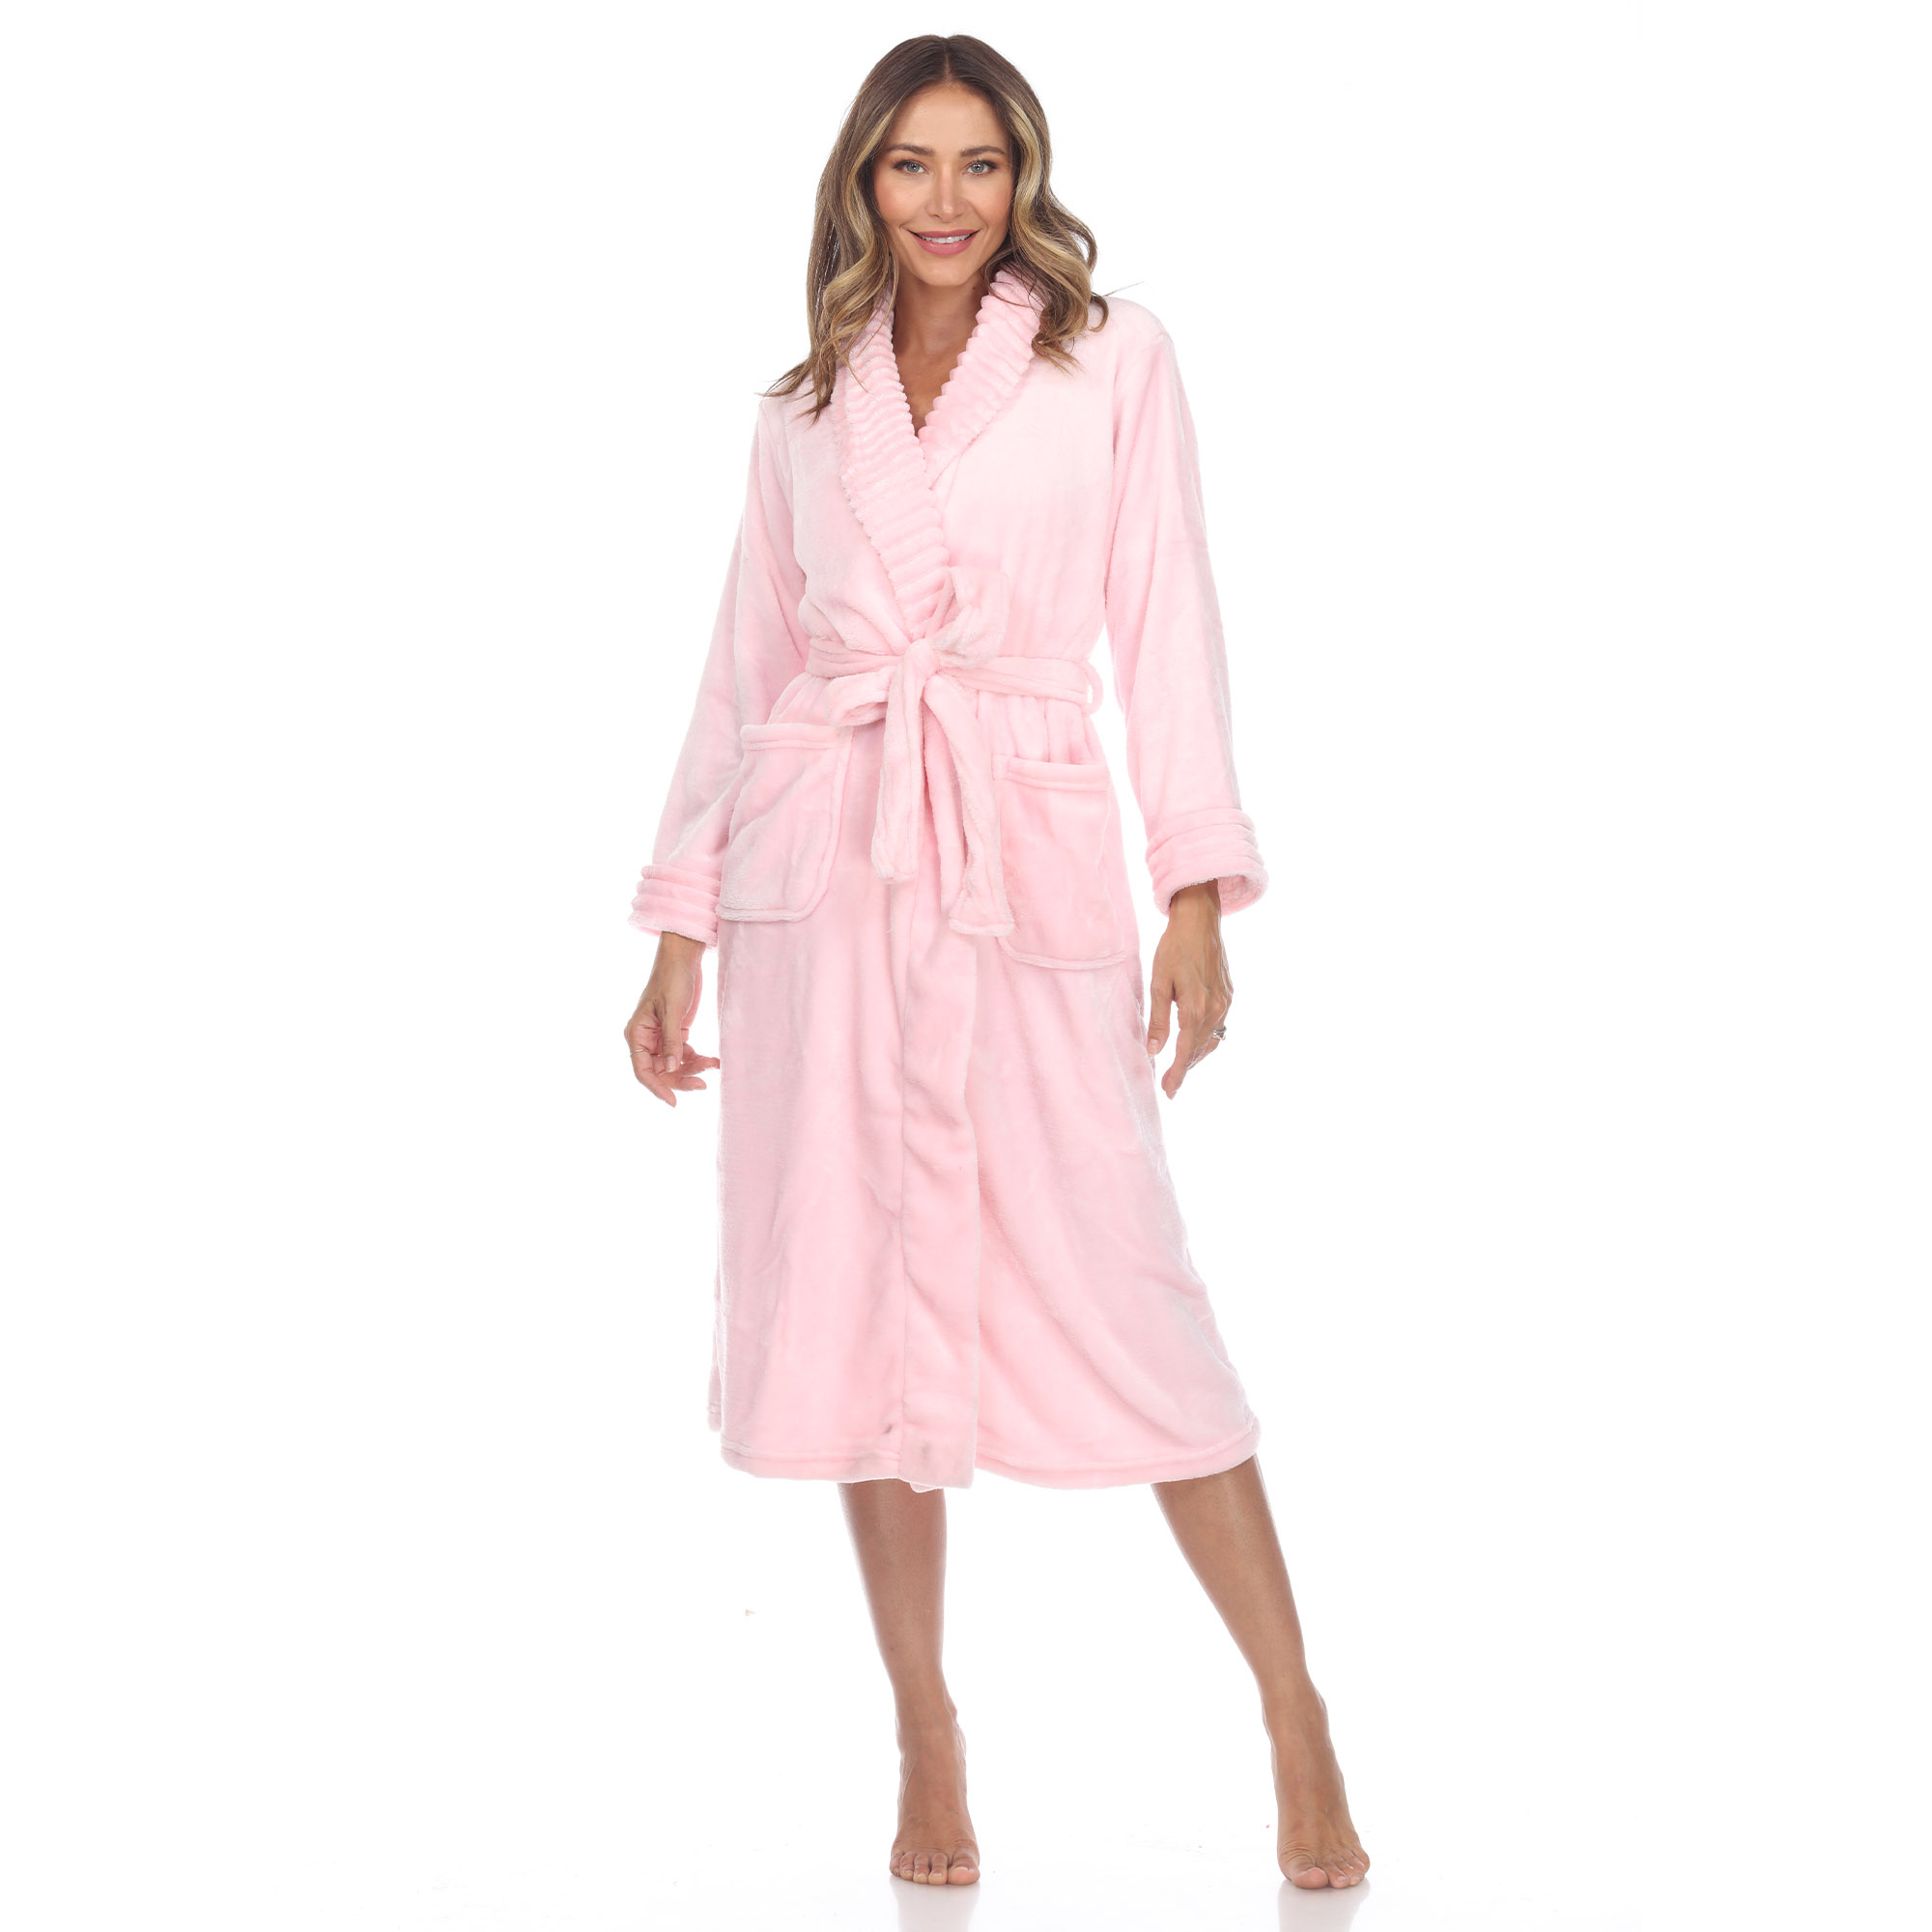 White Mark Women's Cozy Lounge Robe - Pink, L/XL